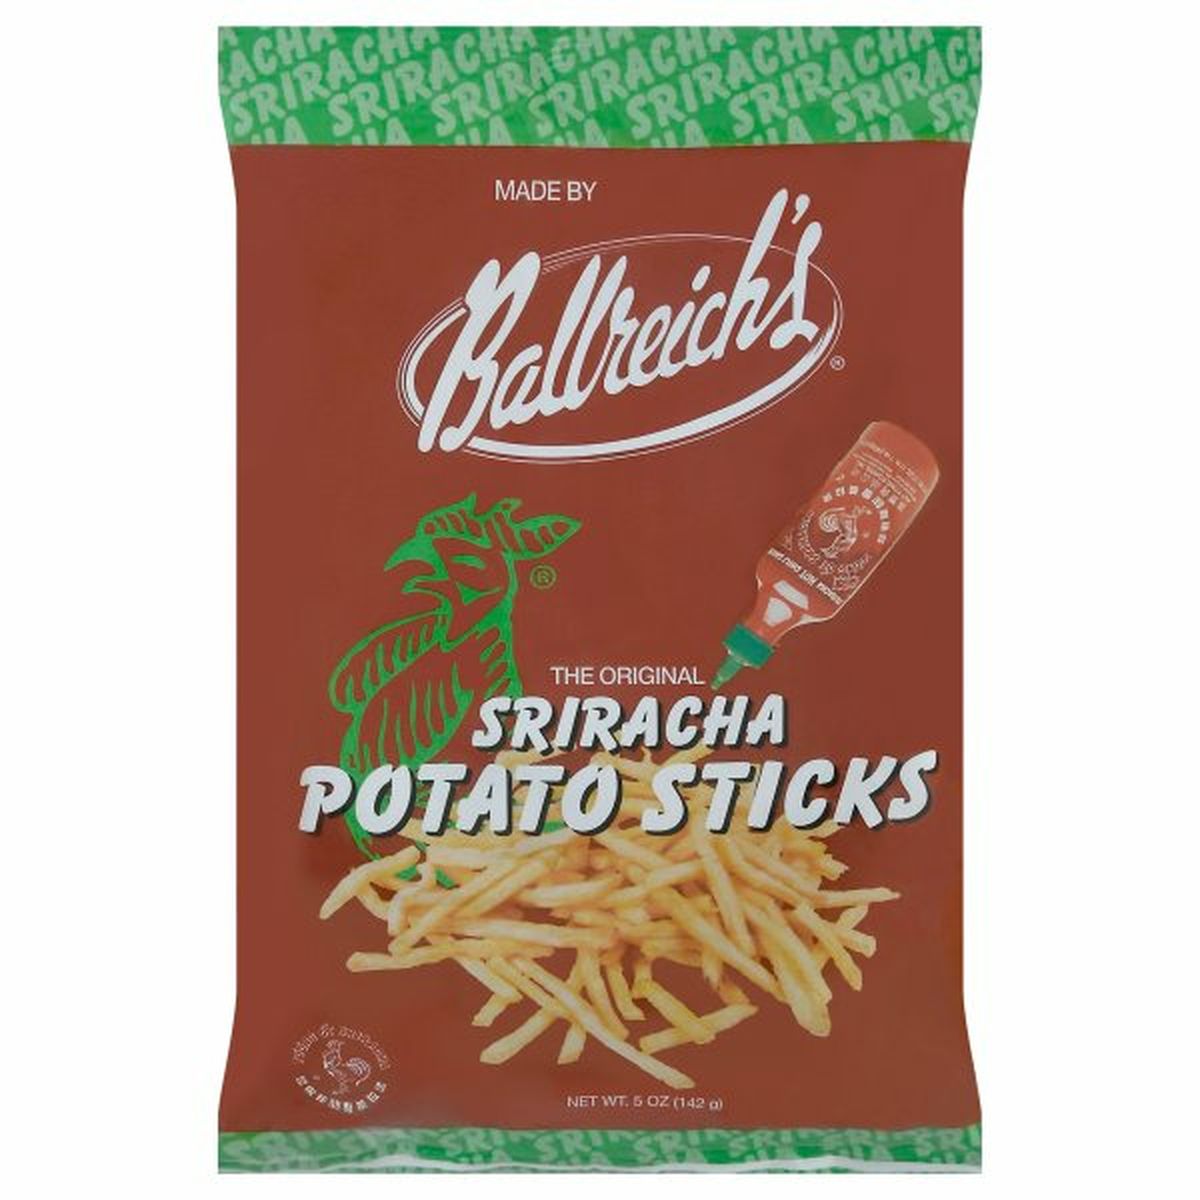 Calories in Ballreich's Potato Sticks, Sriracha